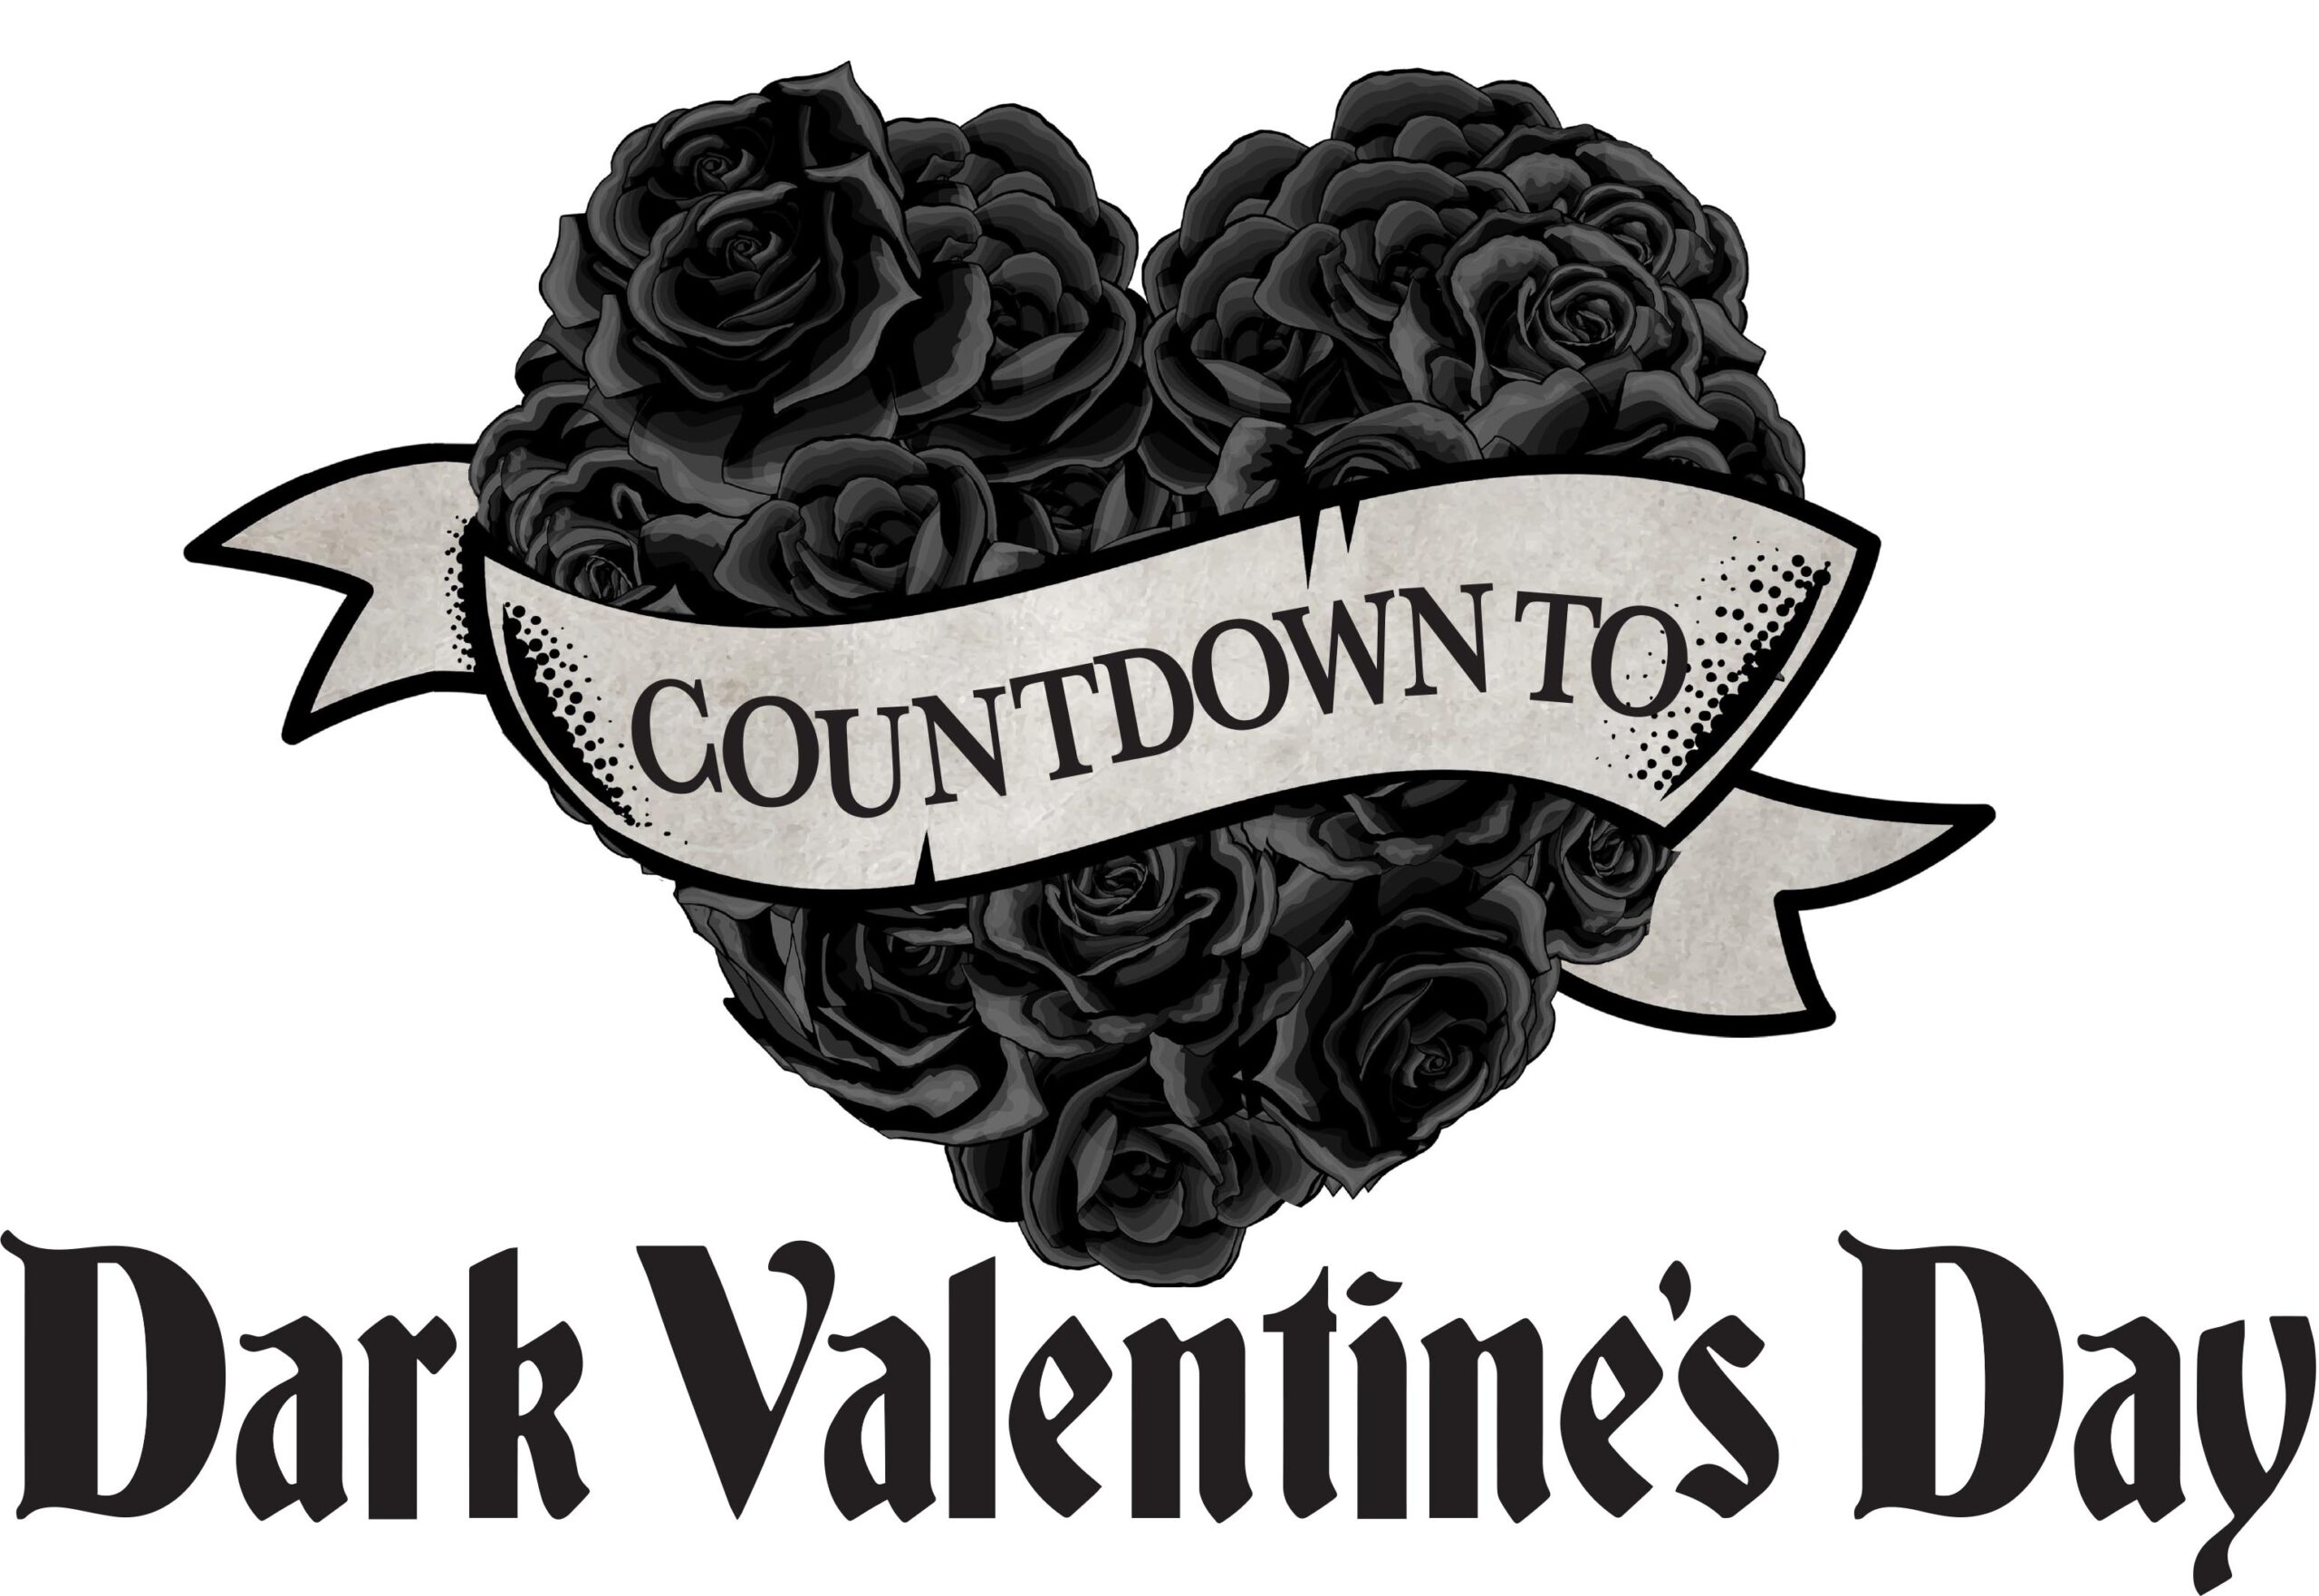 Dark Valentines